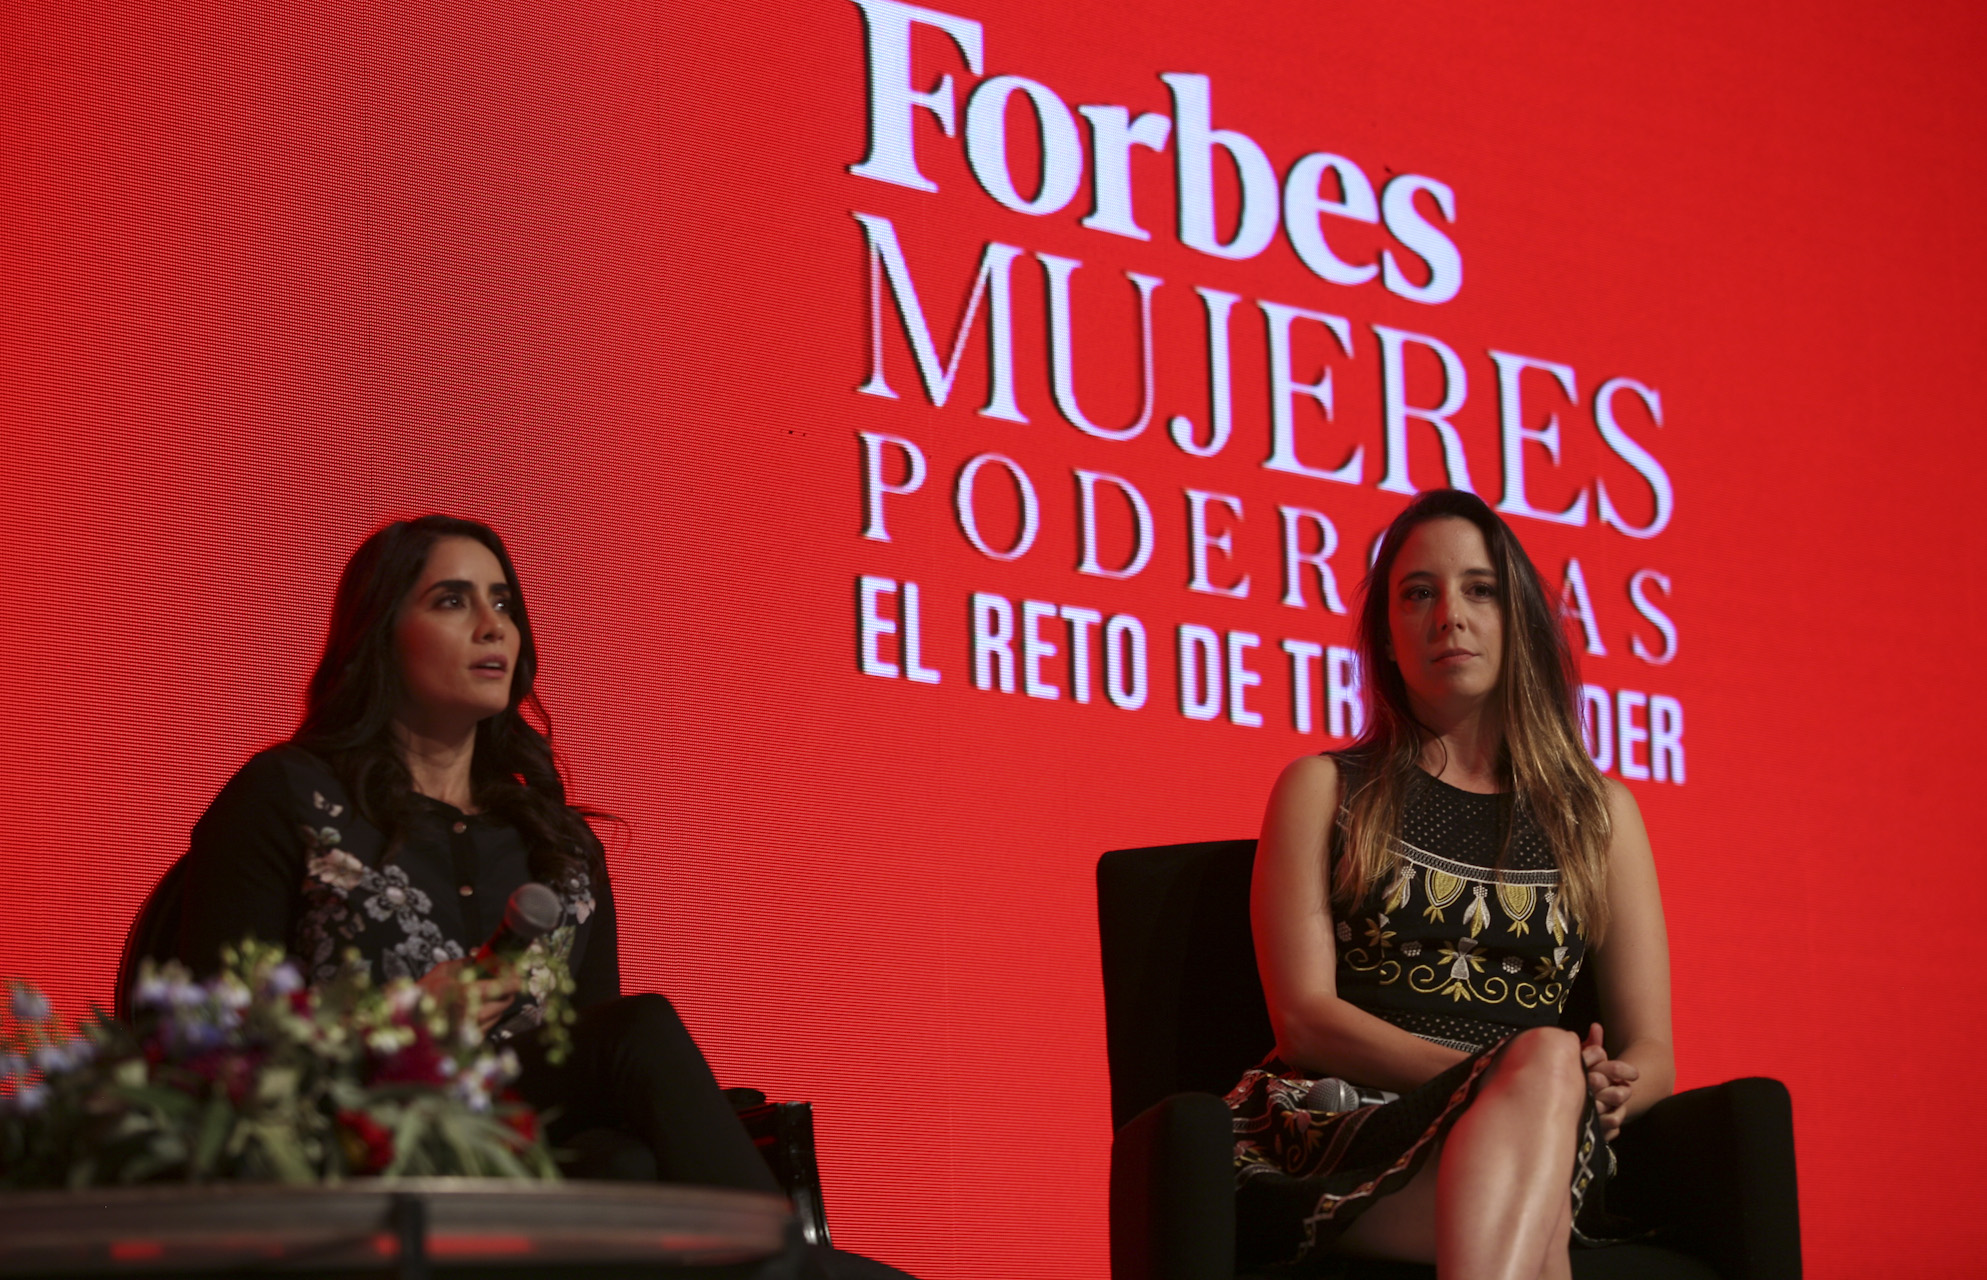 Foro Forbes Mujeres Poderosas 2017